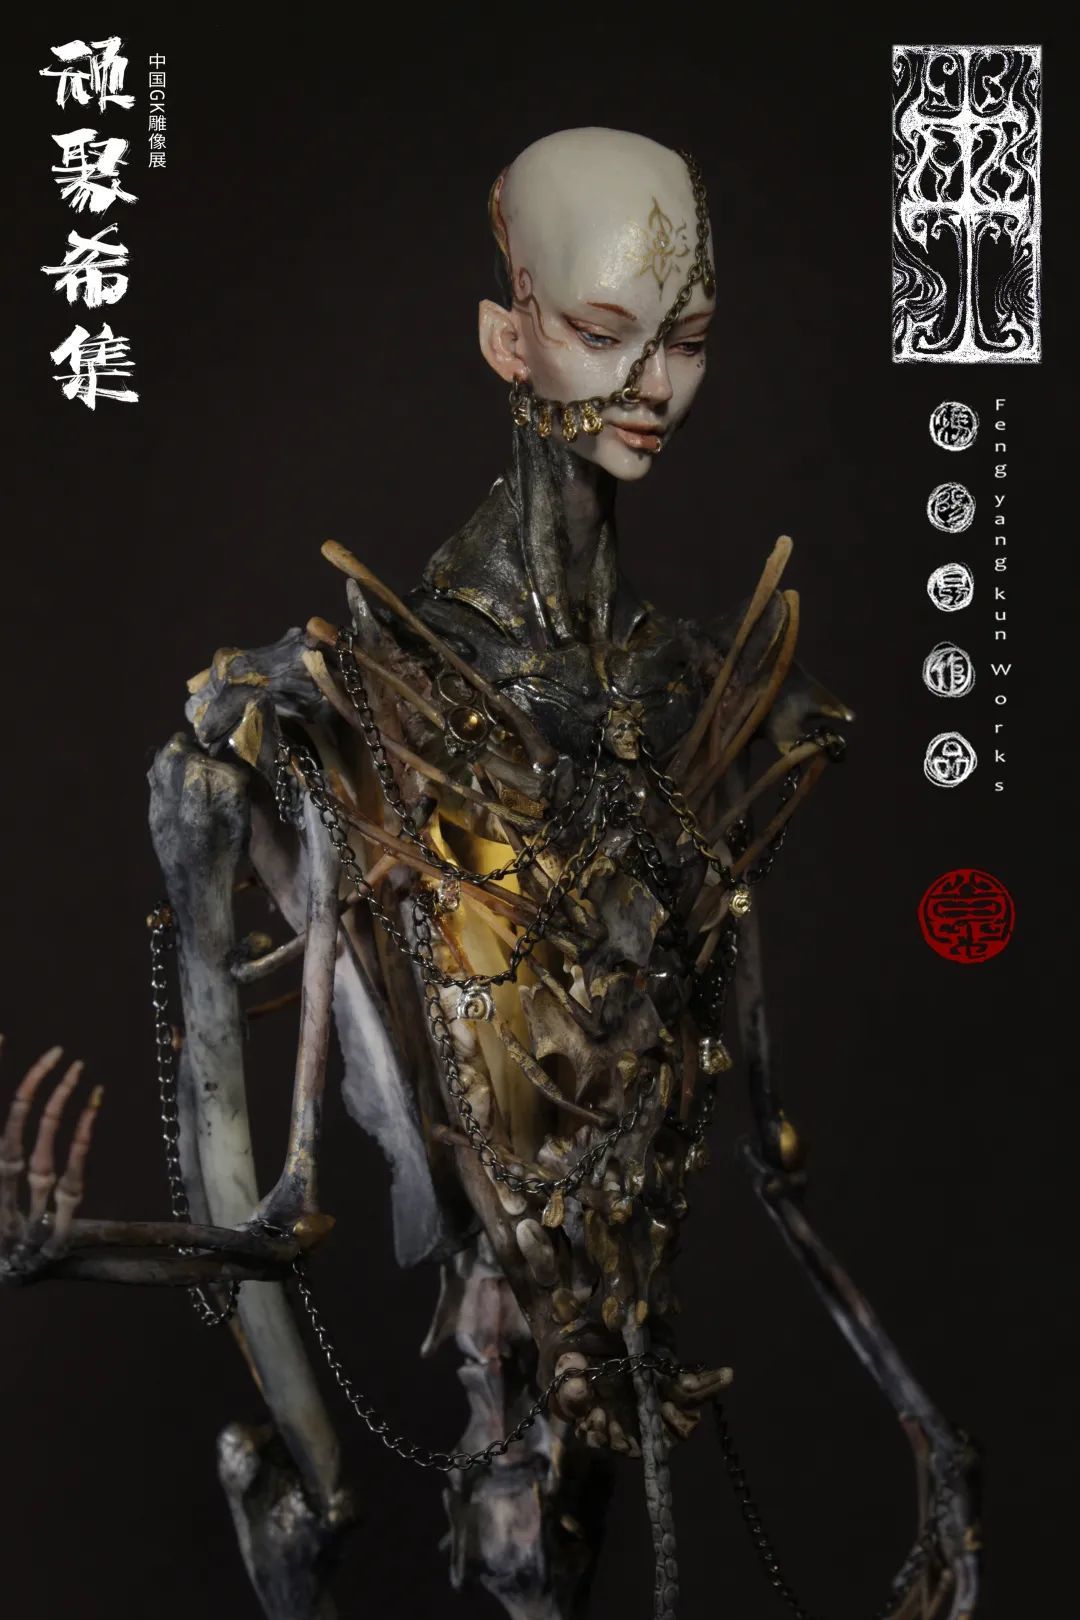 玩模总动员：“顽聚希集”首届中国GK雕像展将在广州召开